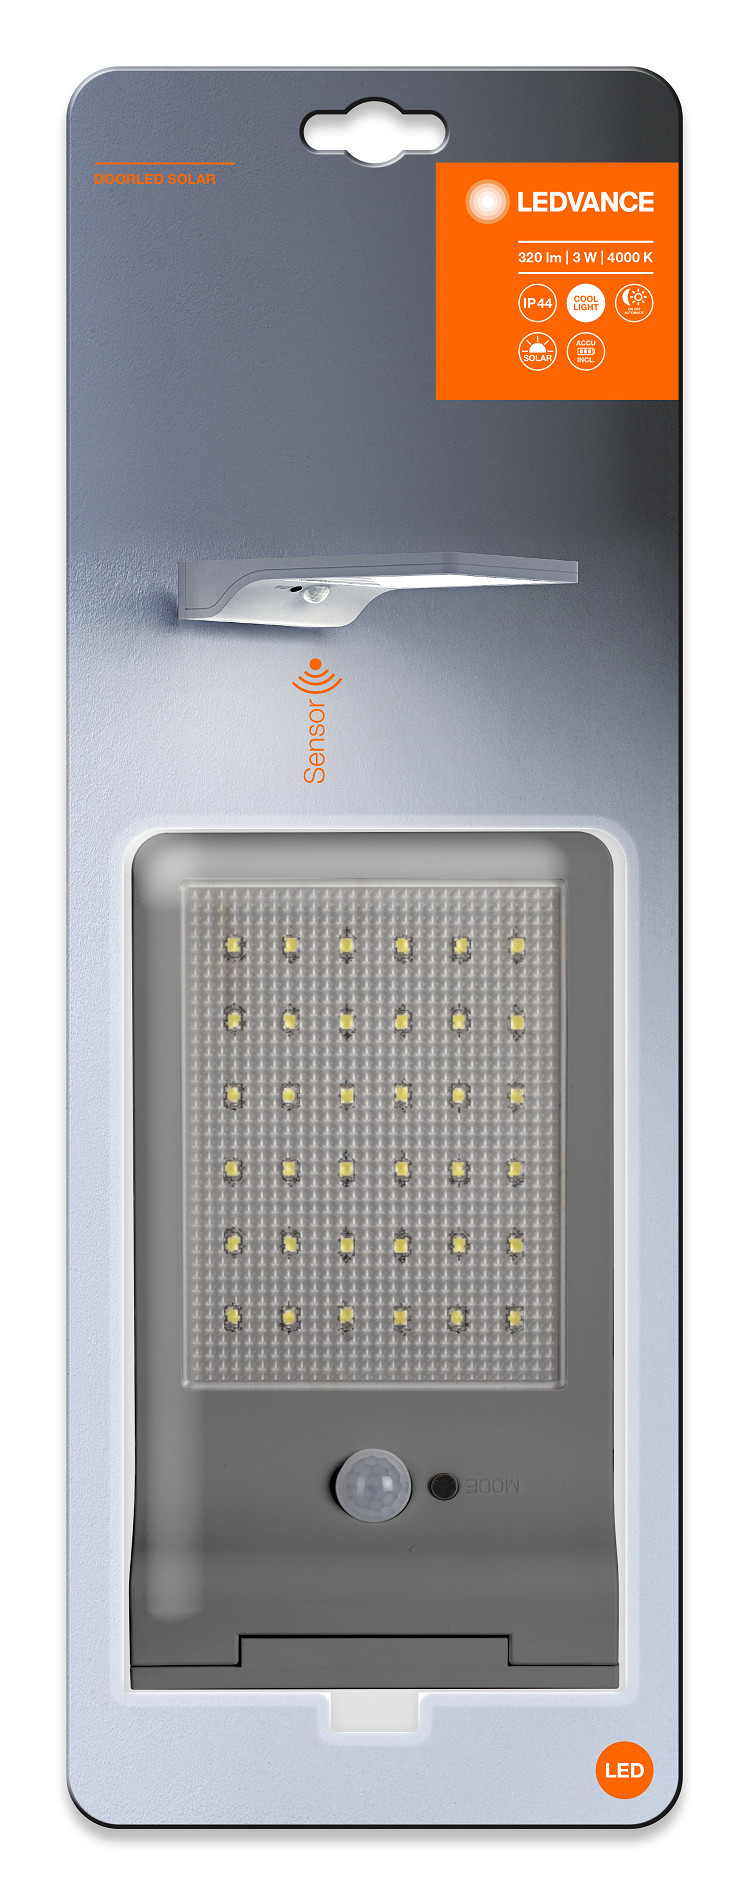 3W/4000K IP44 (Свет/Движение) Серебристый 192x30x110мм - Уличный ночник LEDVANCE DoorLED Solar Sensor